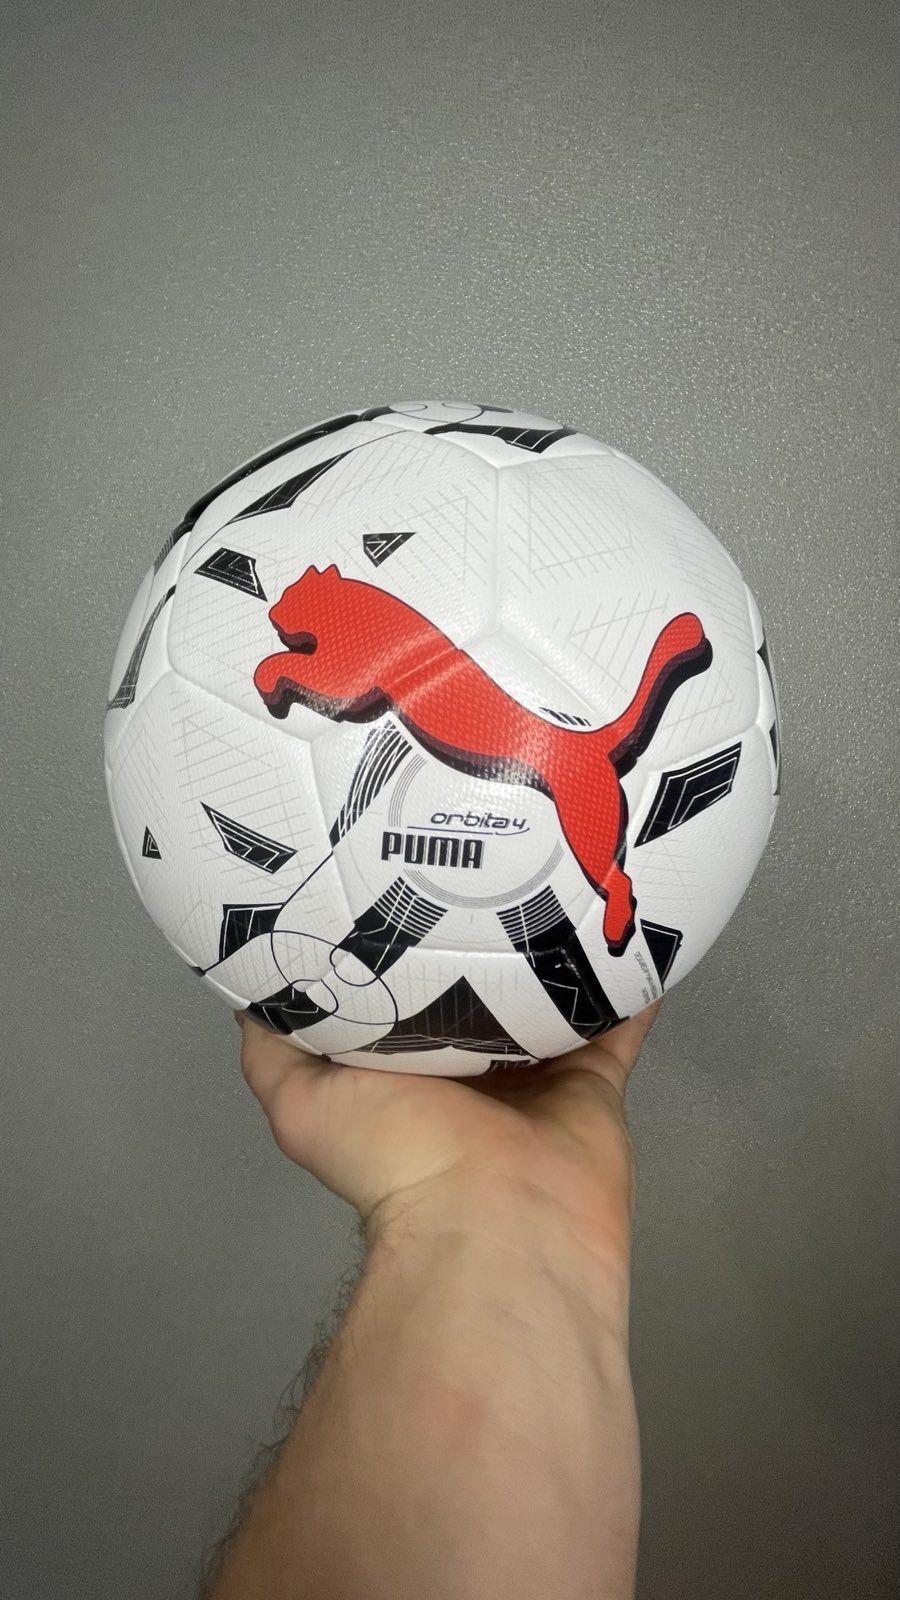 Футбольный мяч Puma ORBITA 4 HYBRID (083778-03)